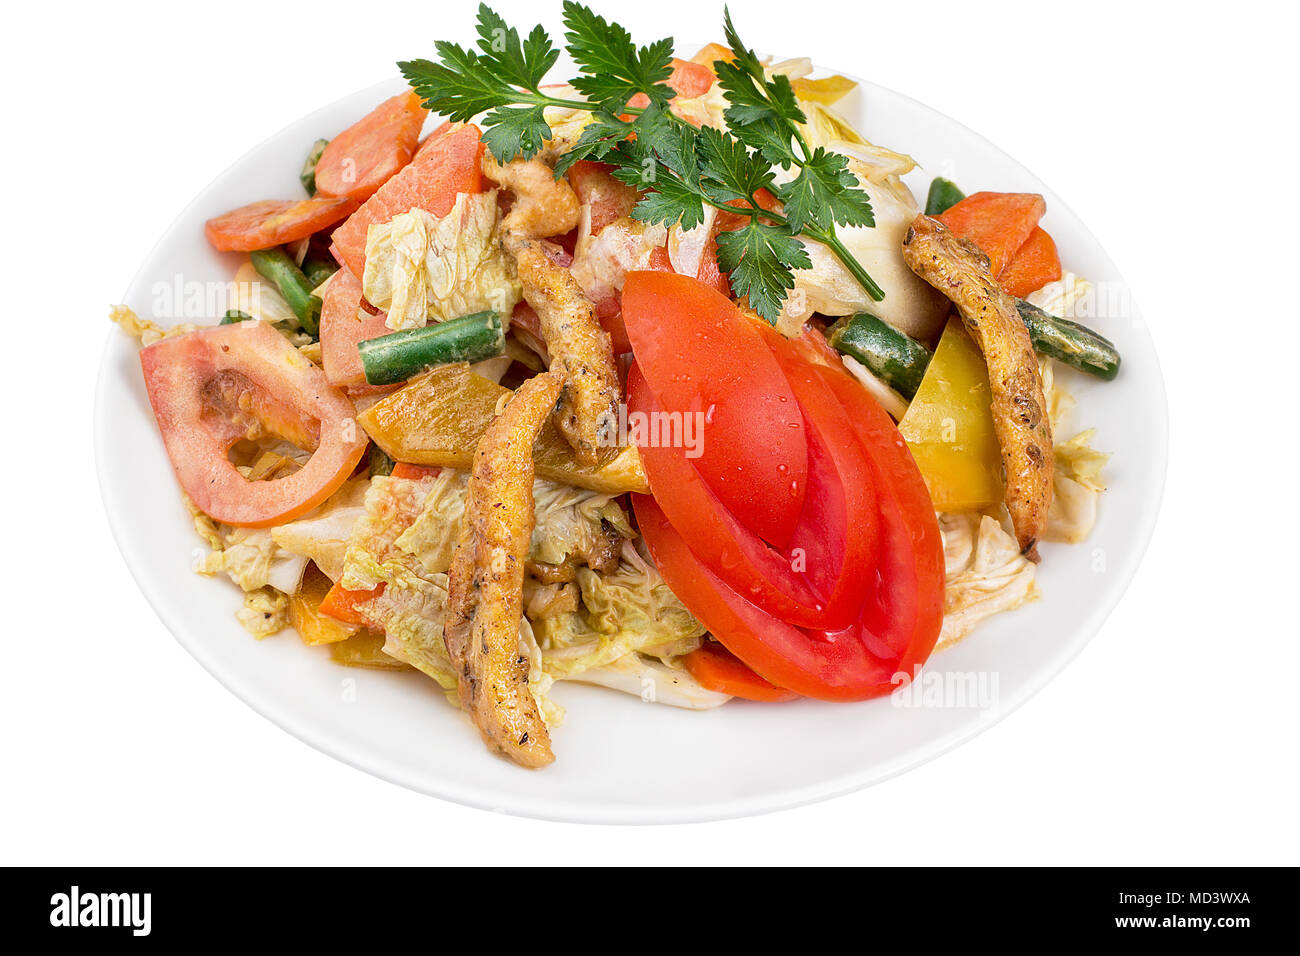 Nahrhafte Salat Gemüse und Fleisch mit Tomate und Huhn Scheiben, serviert auf einem weißen Teller. Auf weissem Hintergrund. Stockfoto